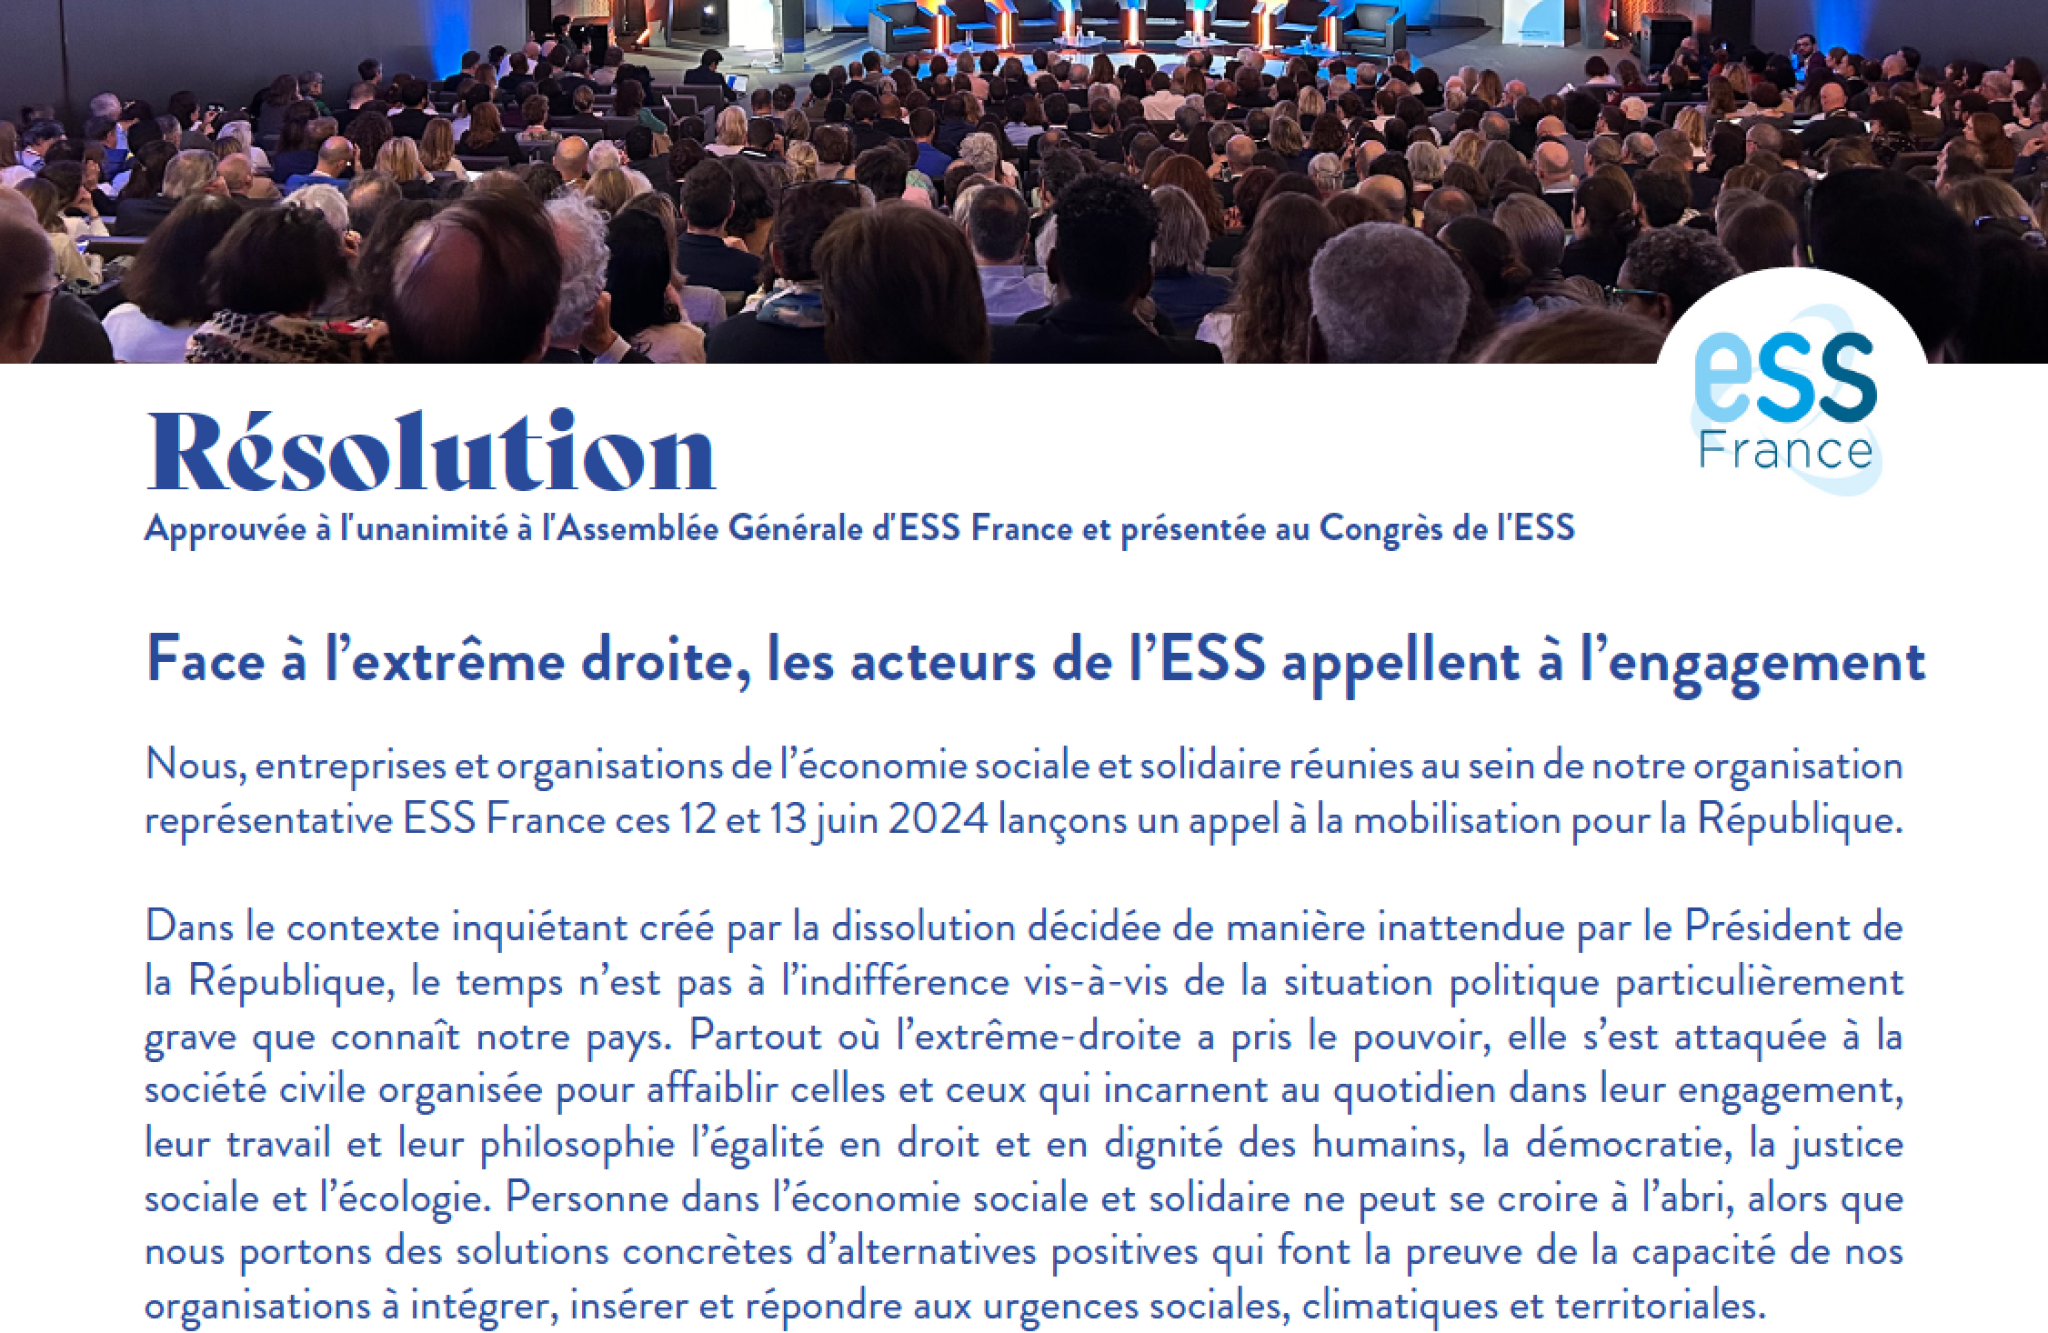 Résolution "Face à l'extrême droite, les acteurs de l'ESS appellent à l'engagement"